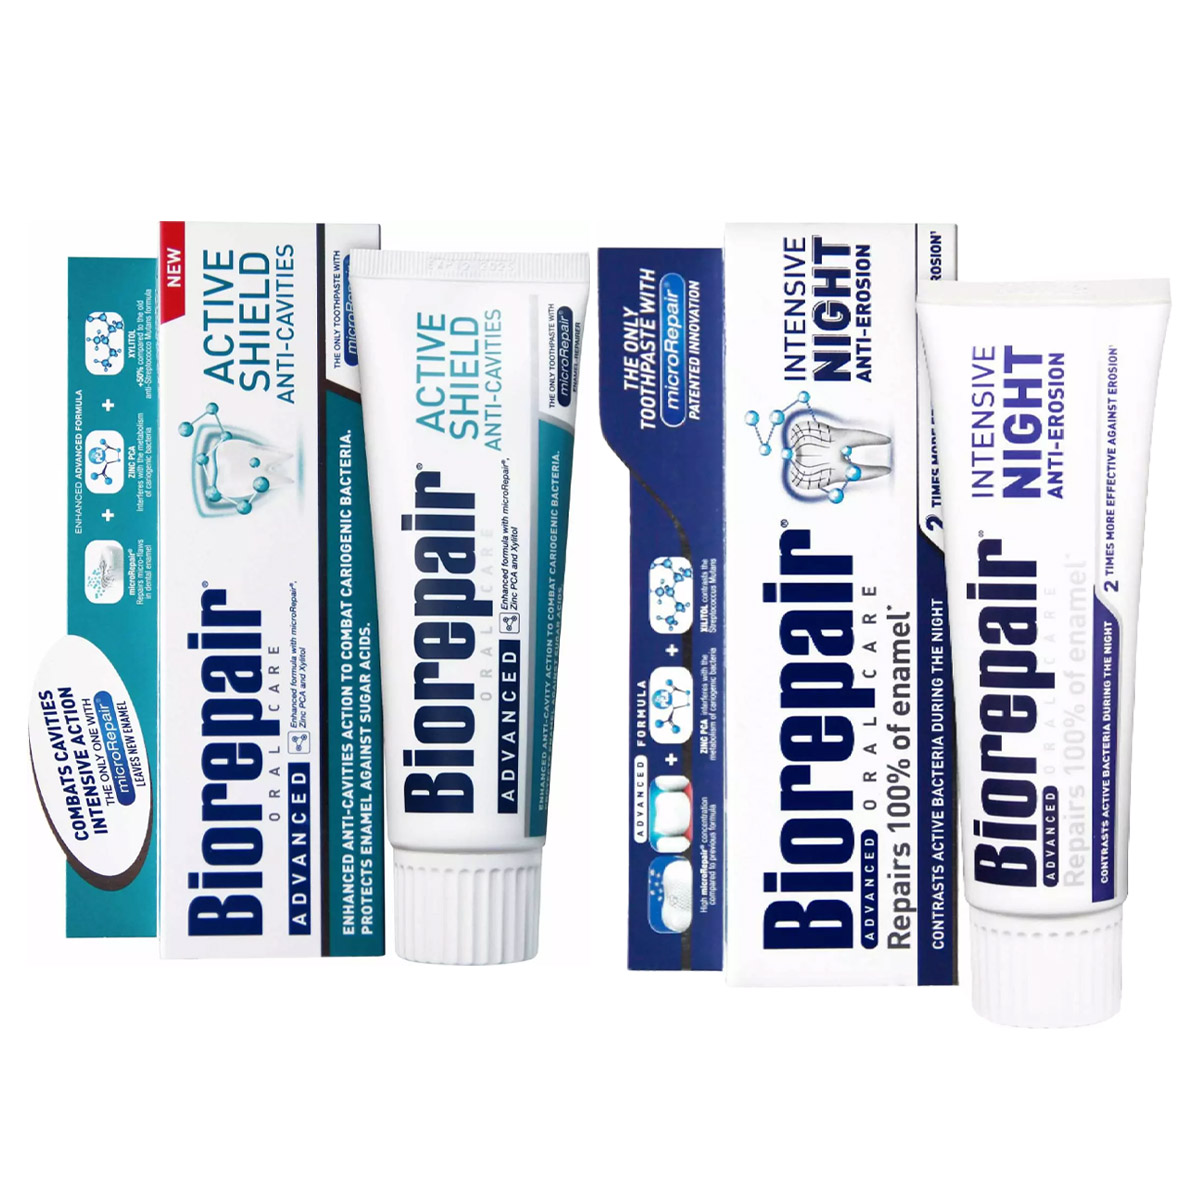 Biorepair Набор зубных паст для защиты эмали, 2х75 мл (Biorepair, Отбеливание и лечение) biorepair набор зубных паст для сохранения белизны 2х75 мл biorepair отбеливание и лечение